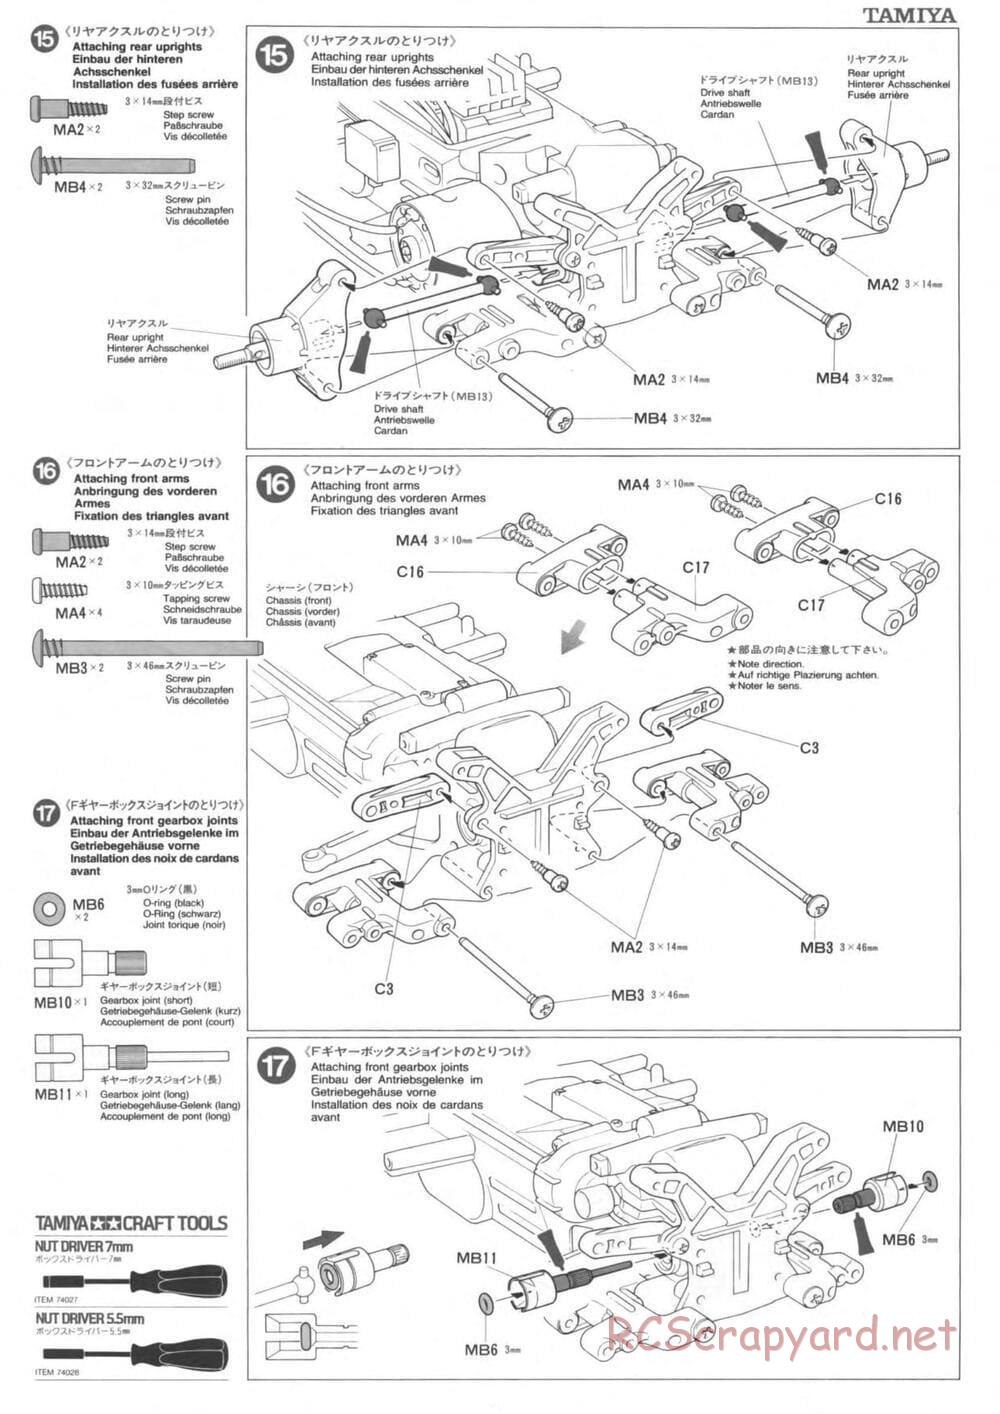 Tamiya - TL-01 Chassis - Manual - Page 11